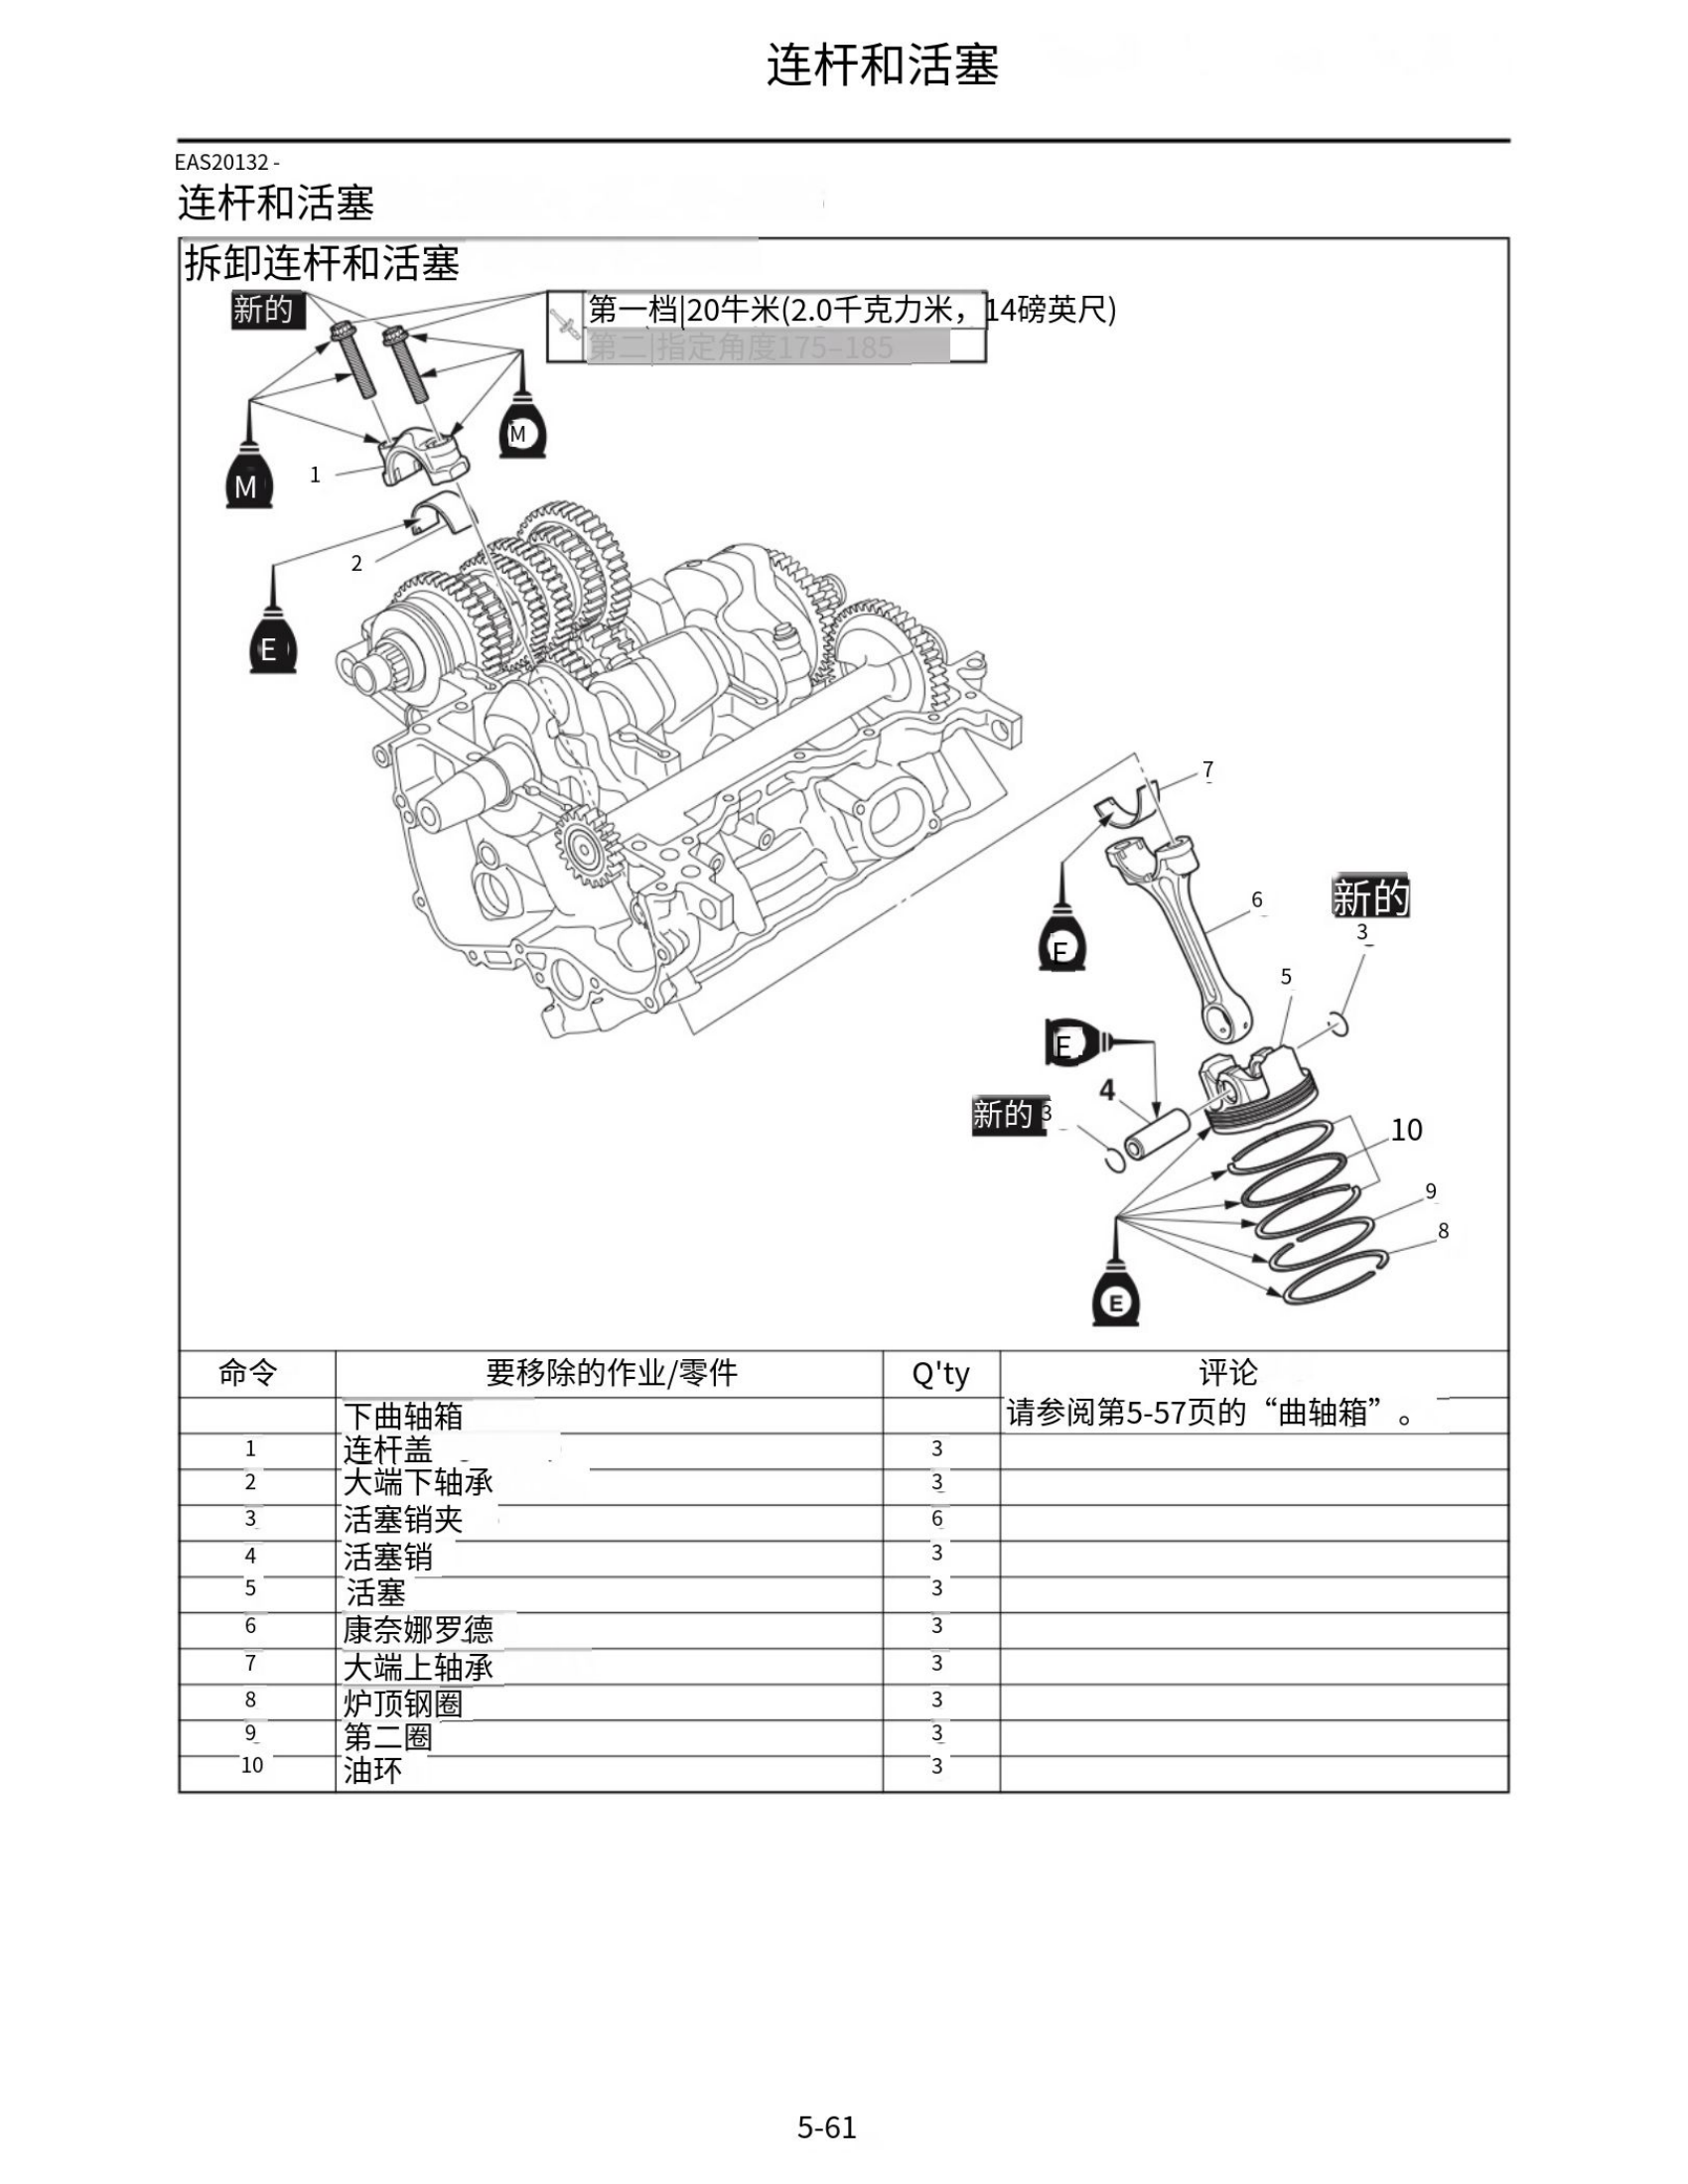 简体中文2017-2020年雅马哈fz09维修手册适用于同年份雅马哈mt09维修手册插图3